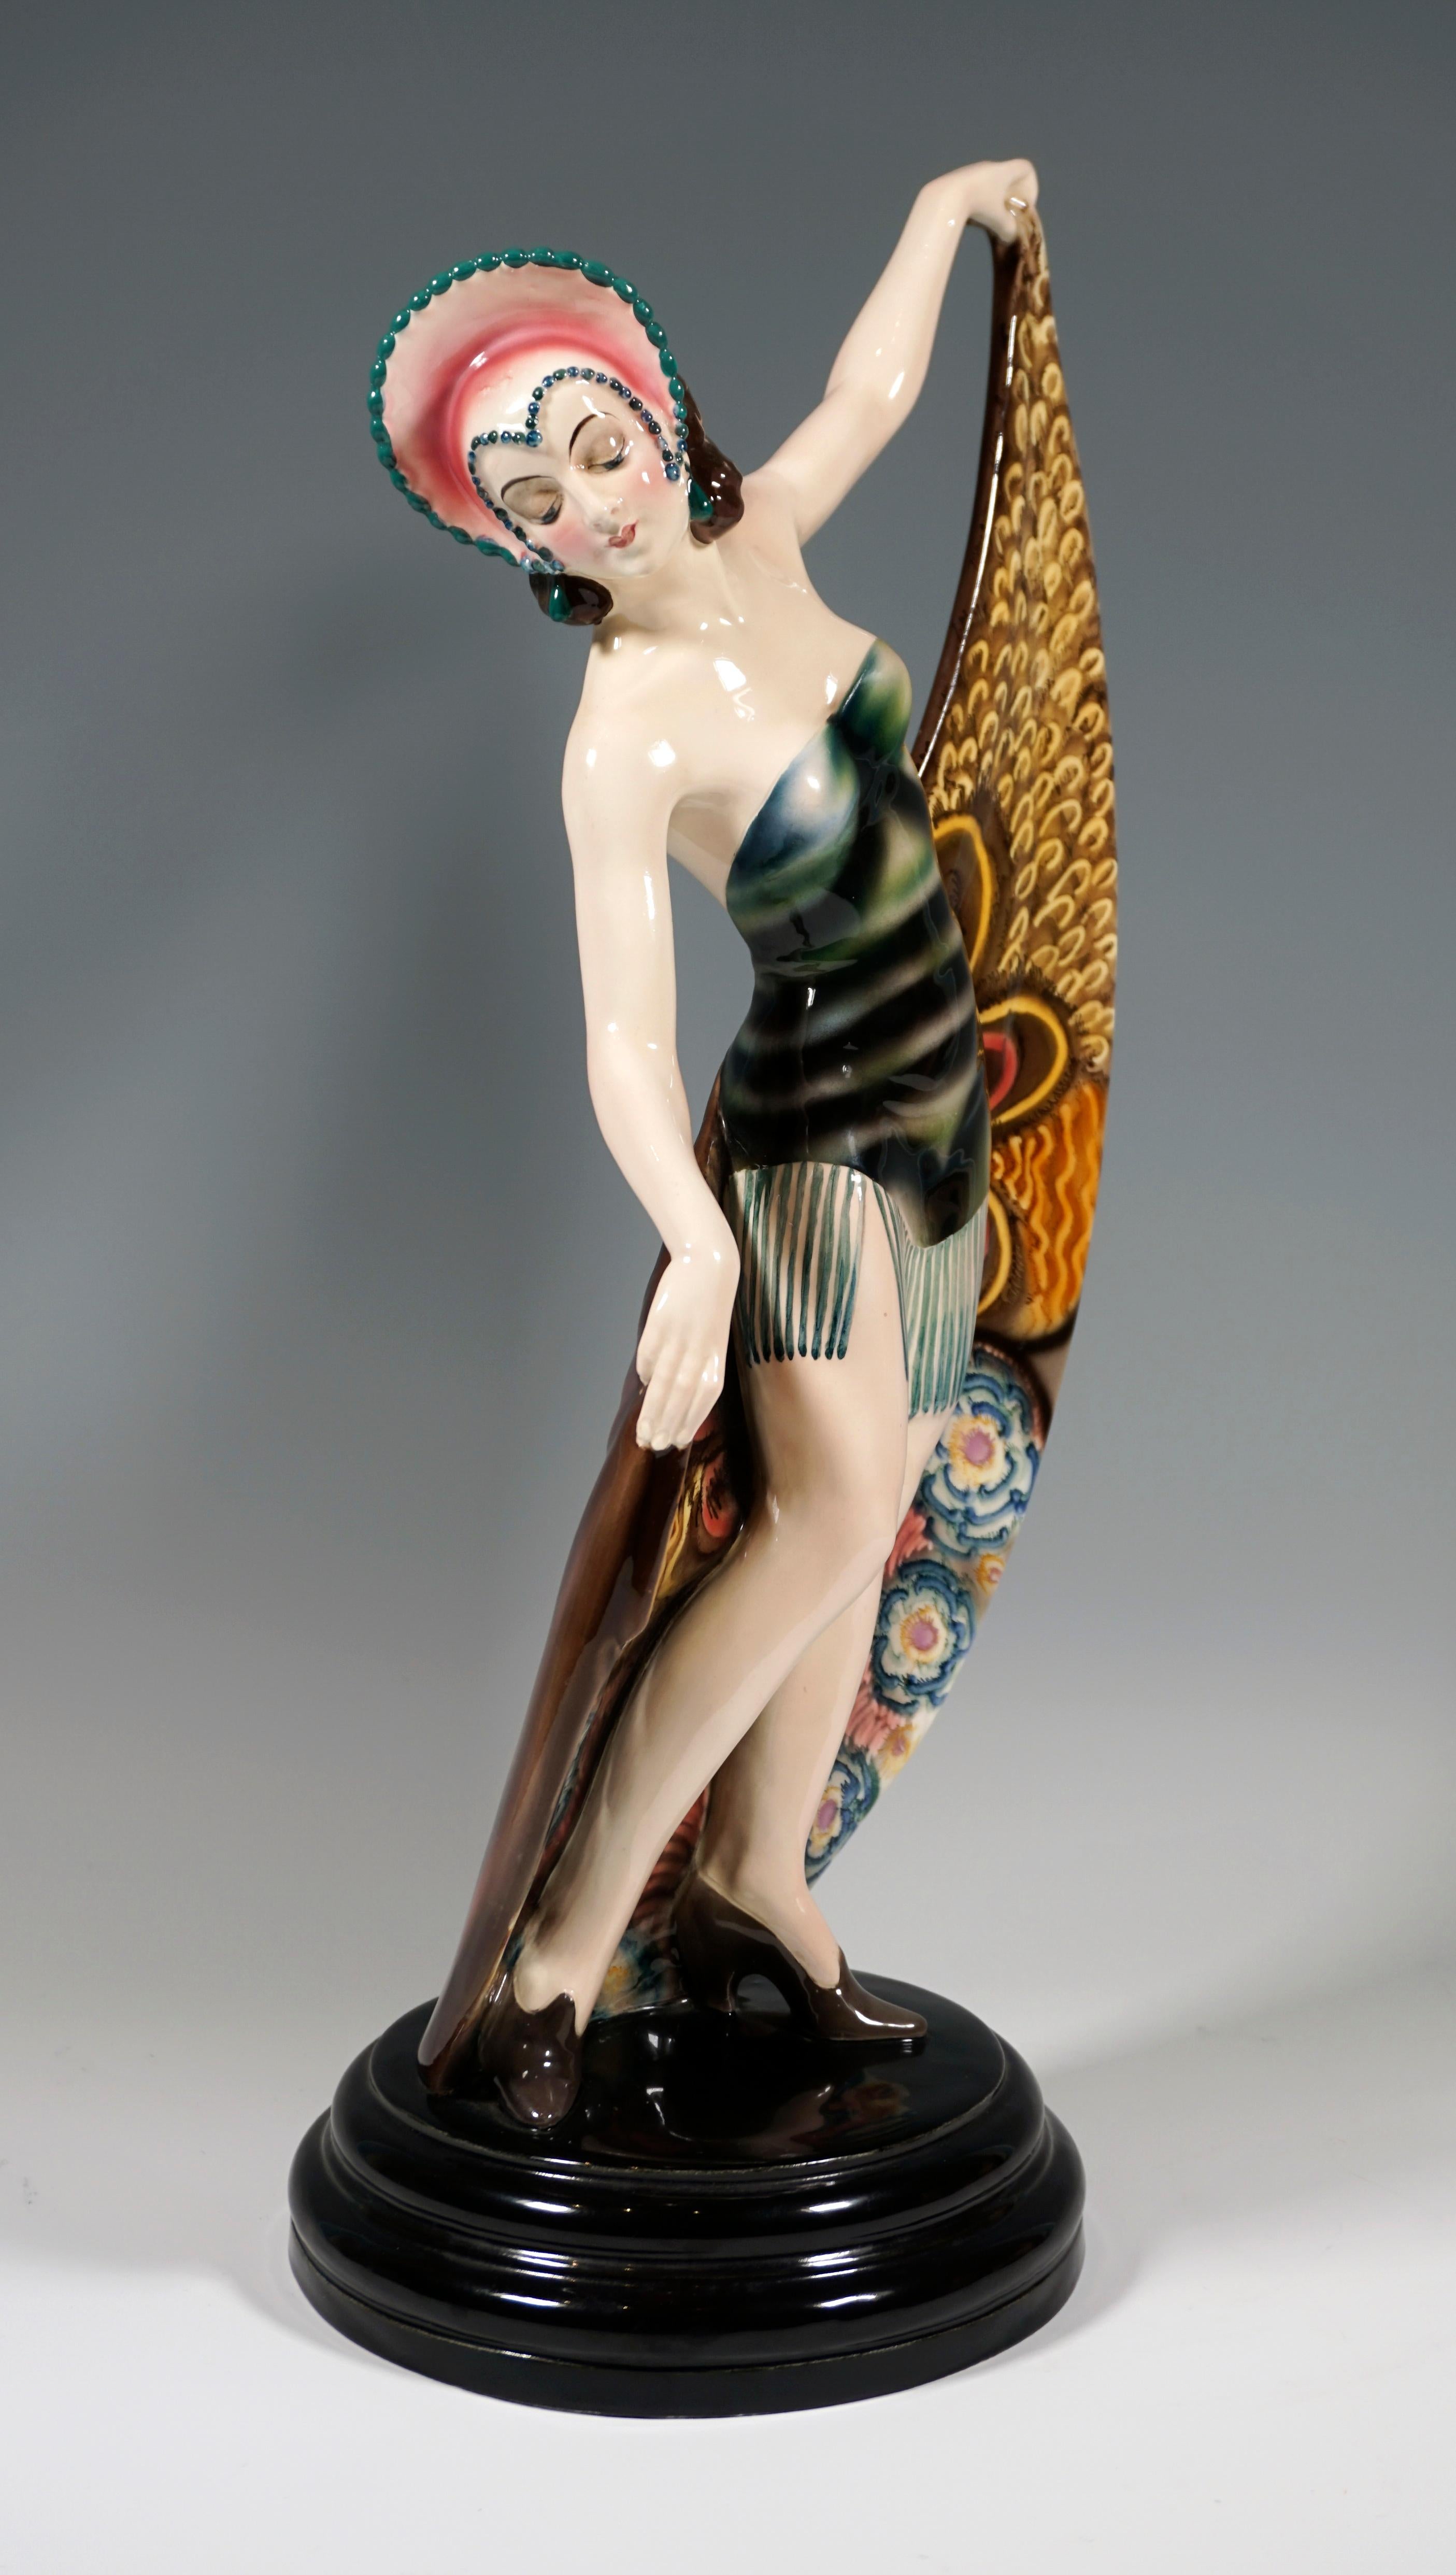 Rare figurine en céramique Goldscheider Art Deco des années 1920 : 
Représentation d'une danseuse en pose. Elle porte une coiffe qui se termine en pointe à l'avant et encadre son visage, ainsi qu'une robe courte et sans bretelles avec de longues